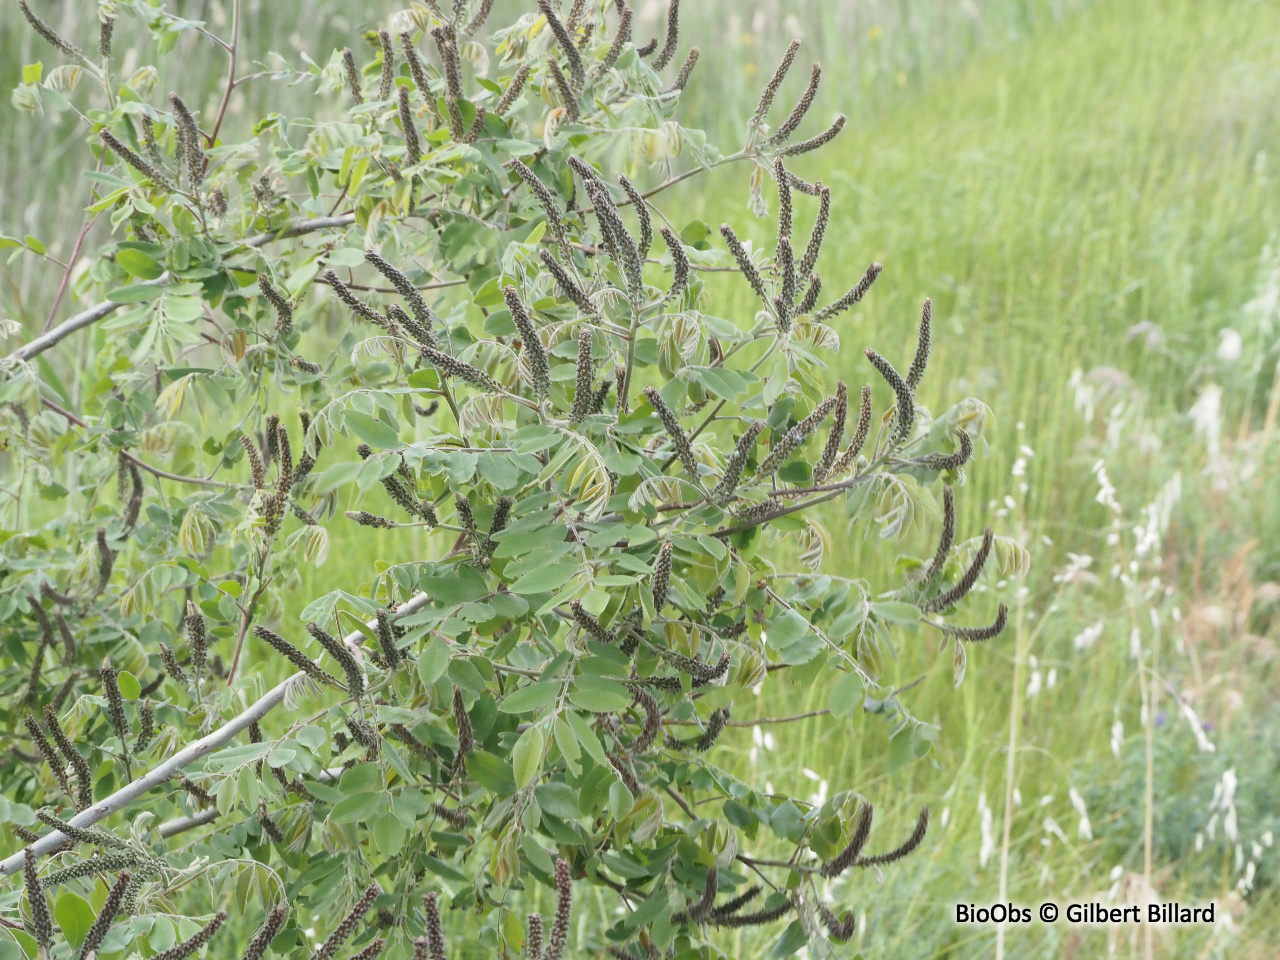 Amorphe arbustive - Amorpha fruticosa - Gilbert Billard - BioObs